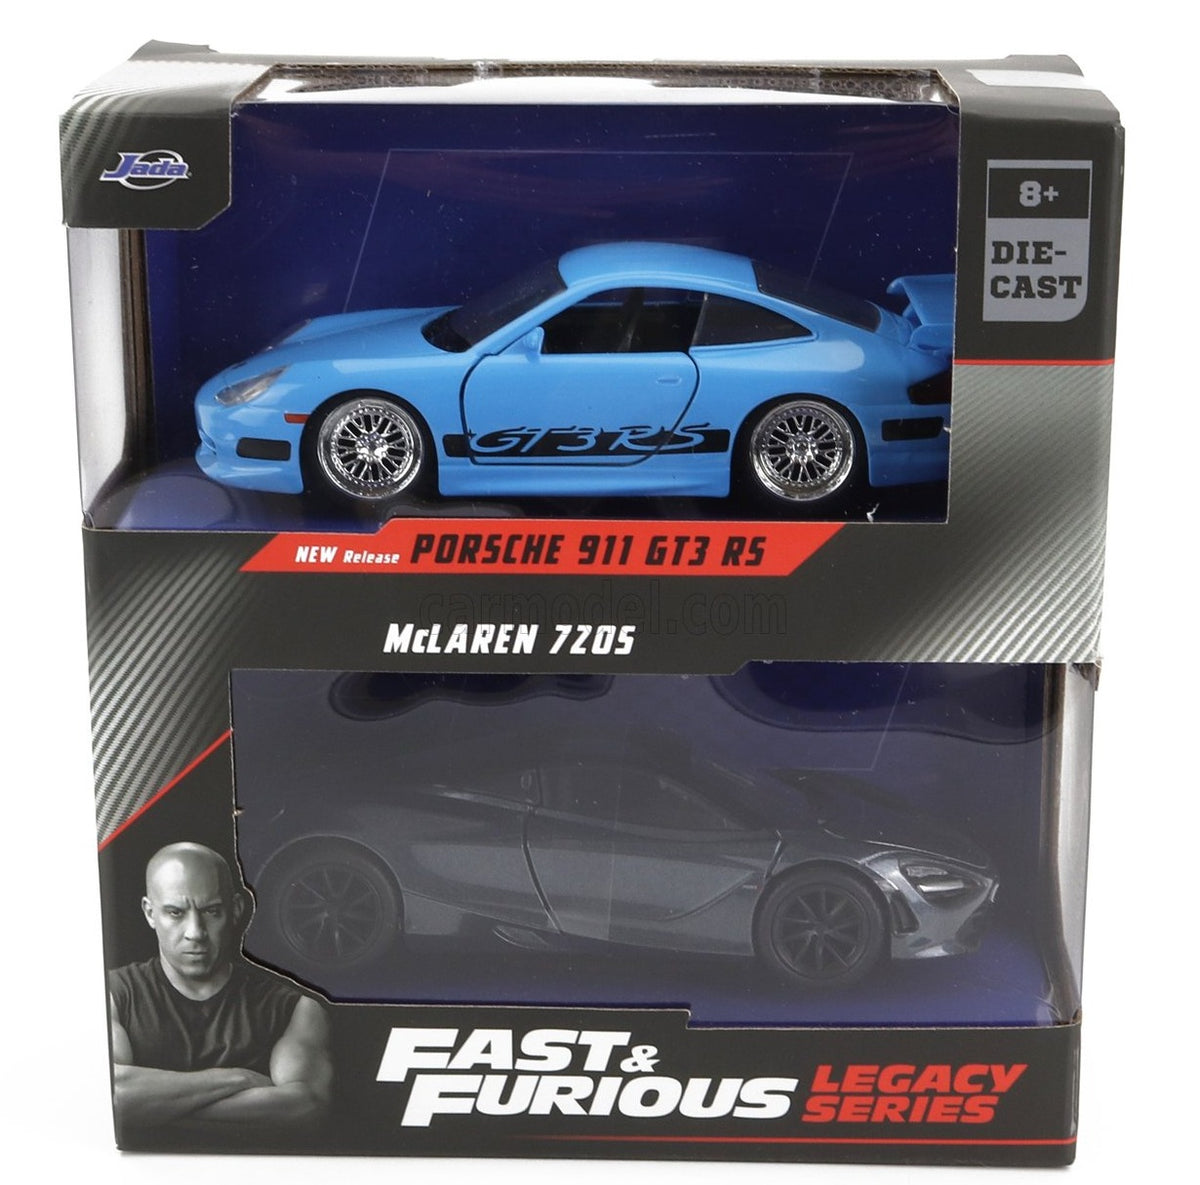 Fast & Furious - Porsche 911 GT3 RS - modèle Jada Toys